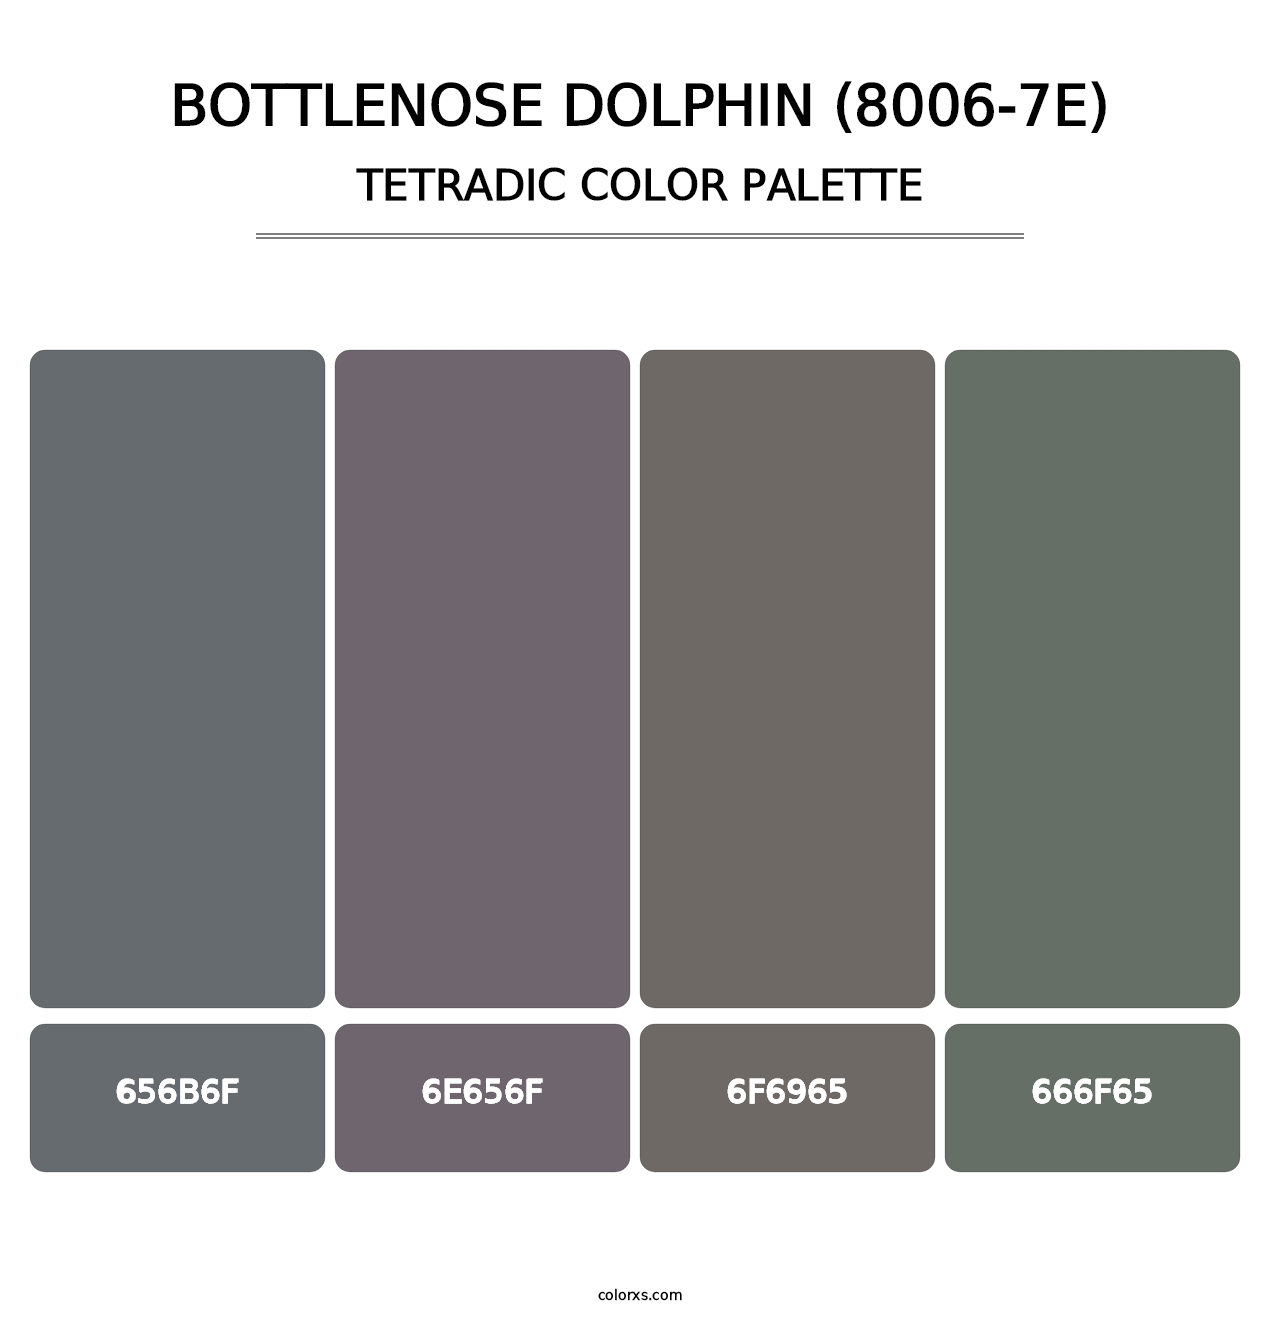 Bottlenose Dolphin (8006-7E) - Tetradic Color Palette